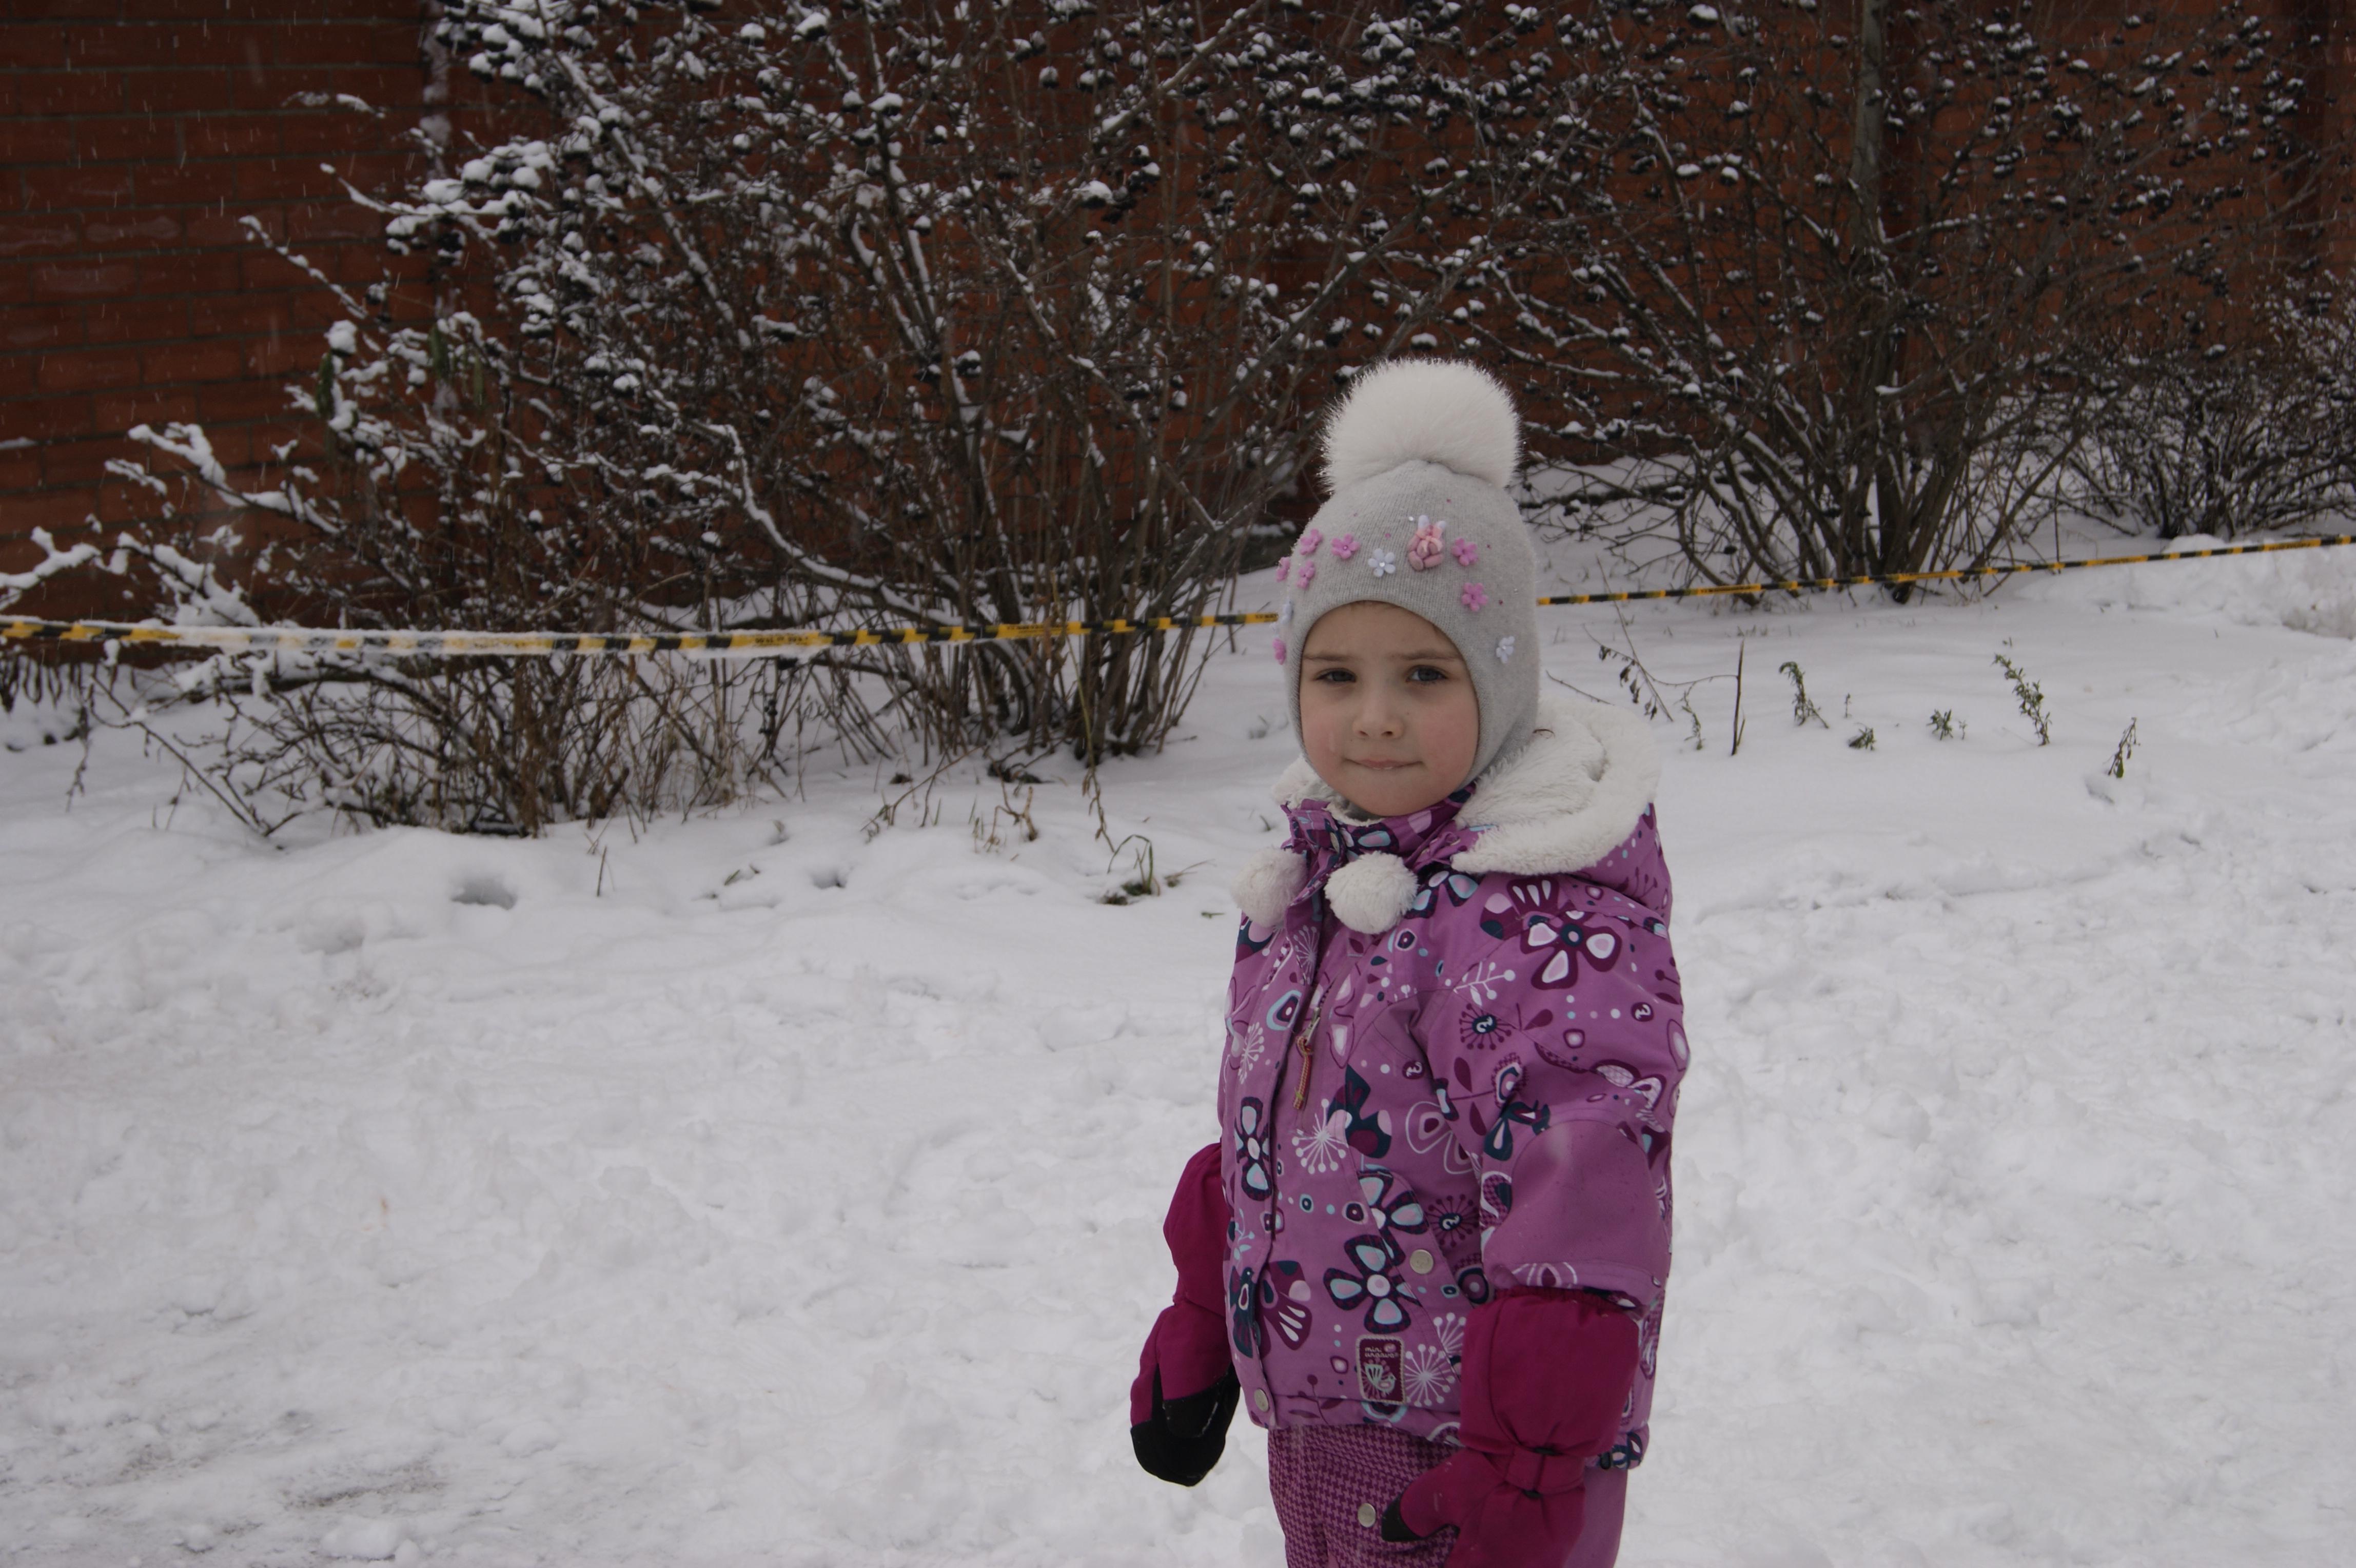 ❄ Ура, зима! Дети обожают зиму: Новый год, снег, каникулы. И, конечно,  много самых разных увлекательных занятий... | ВКонтакте